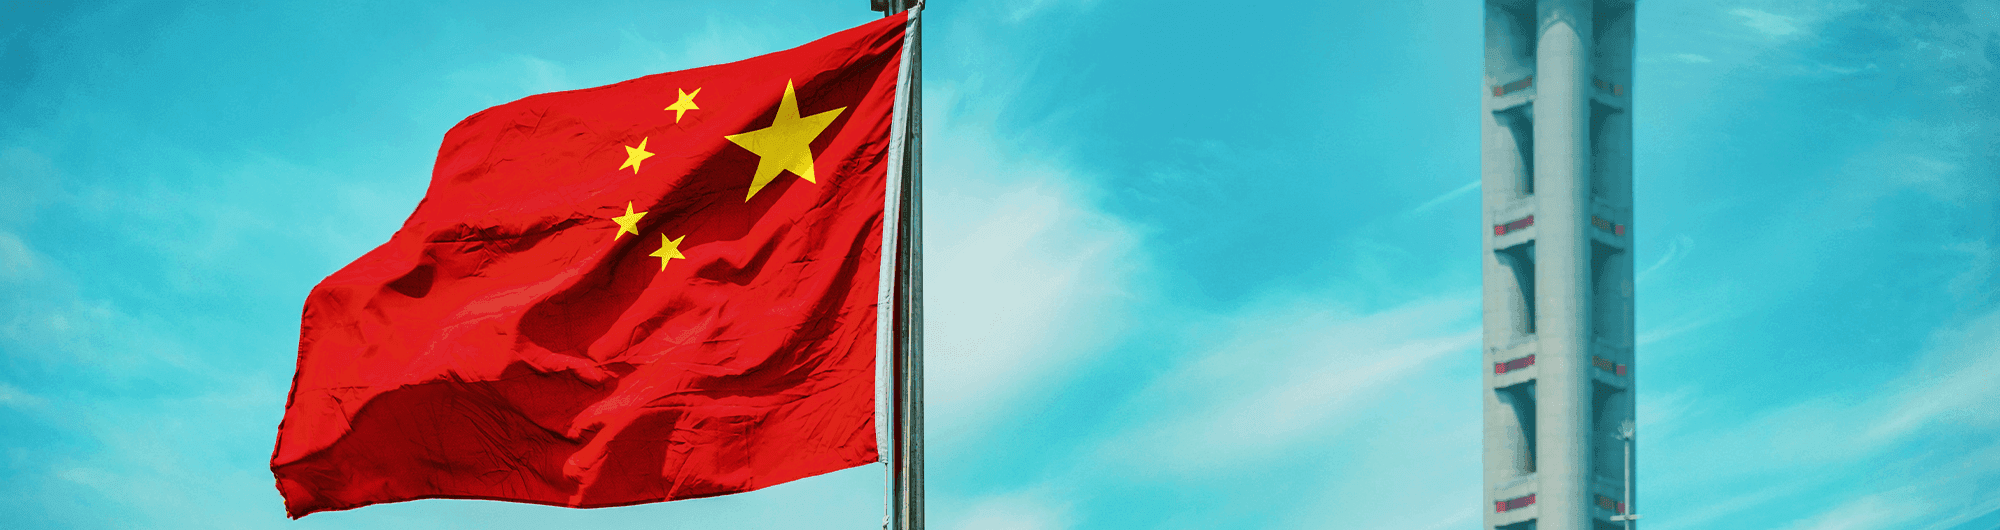 bandeira da china hasteada 